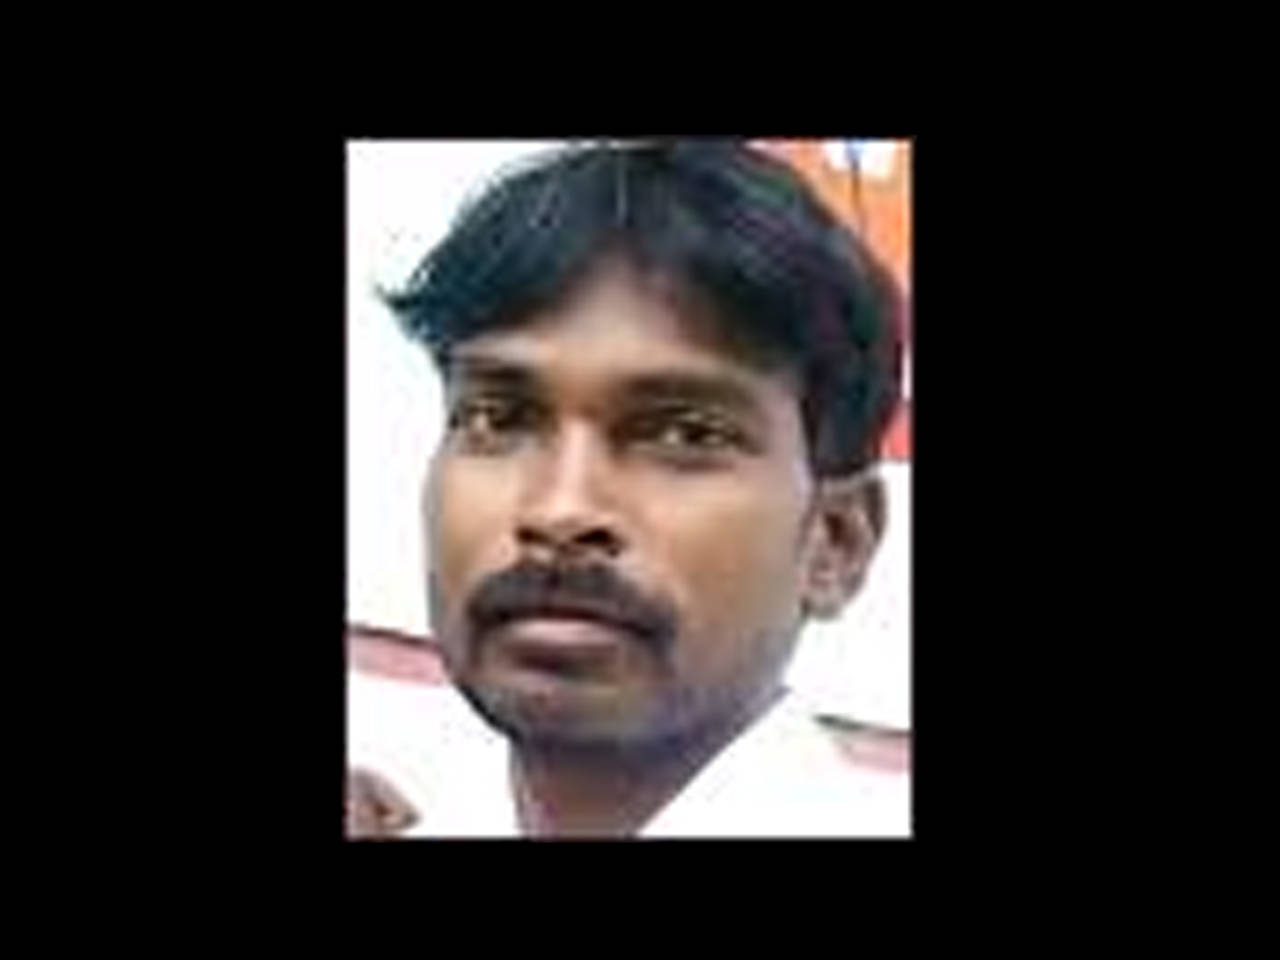 Refused sex, man sets wife, 2 kids on fire near Attur in Tamil Nadu Salem News picture